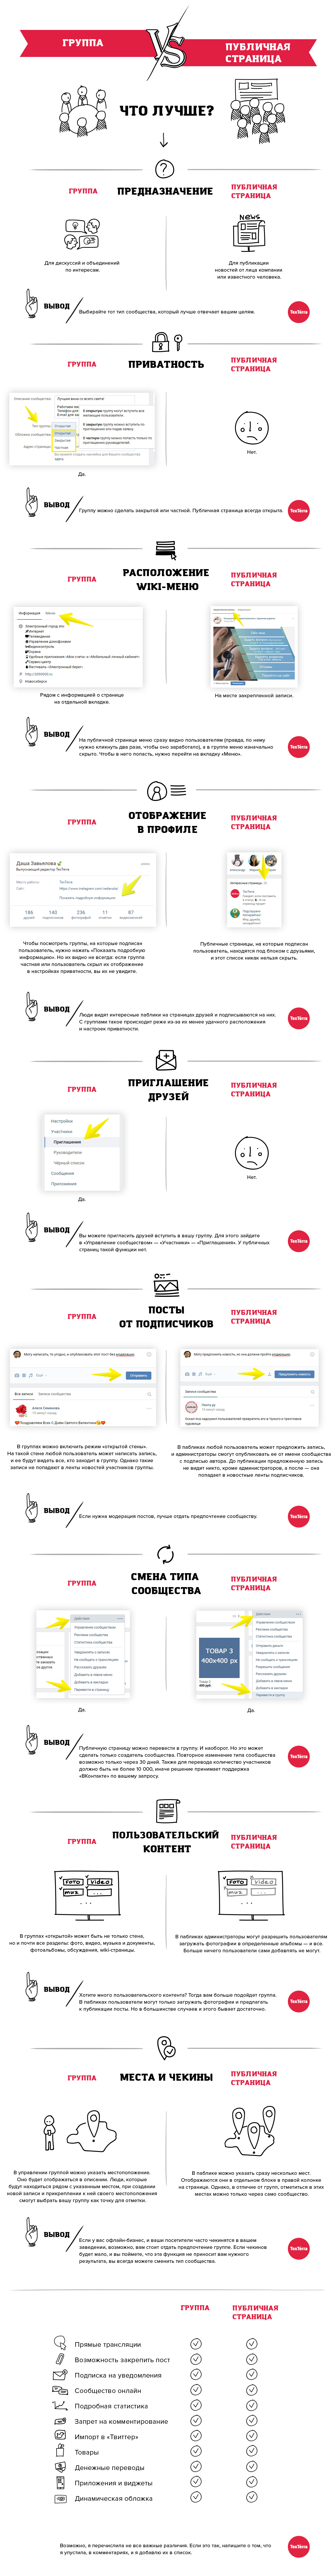 Продвижение личных страниц в ВКонтакте для бизнеса